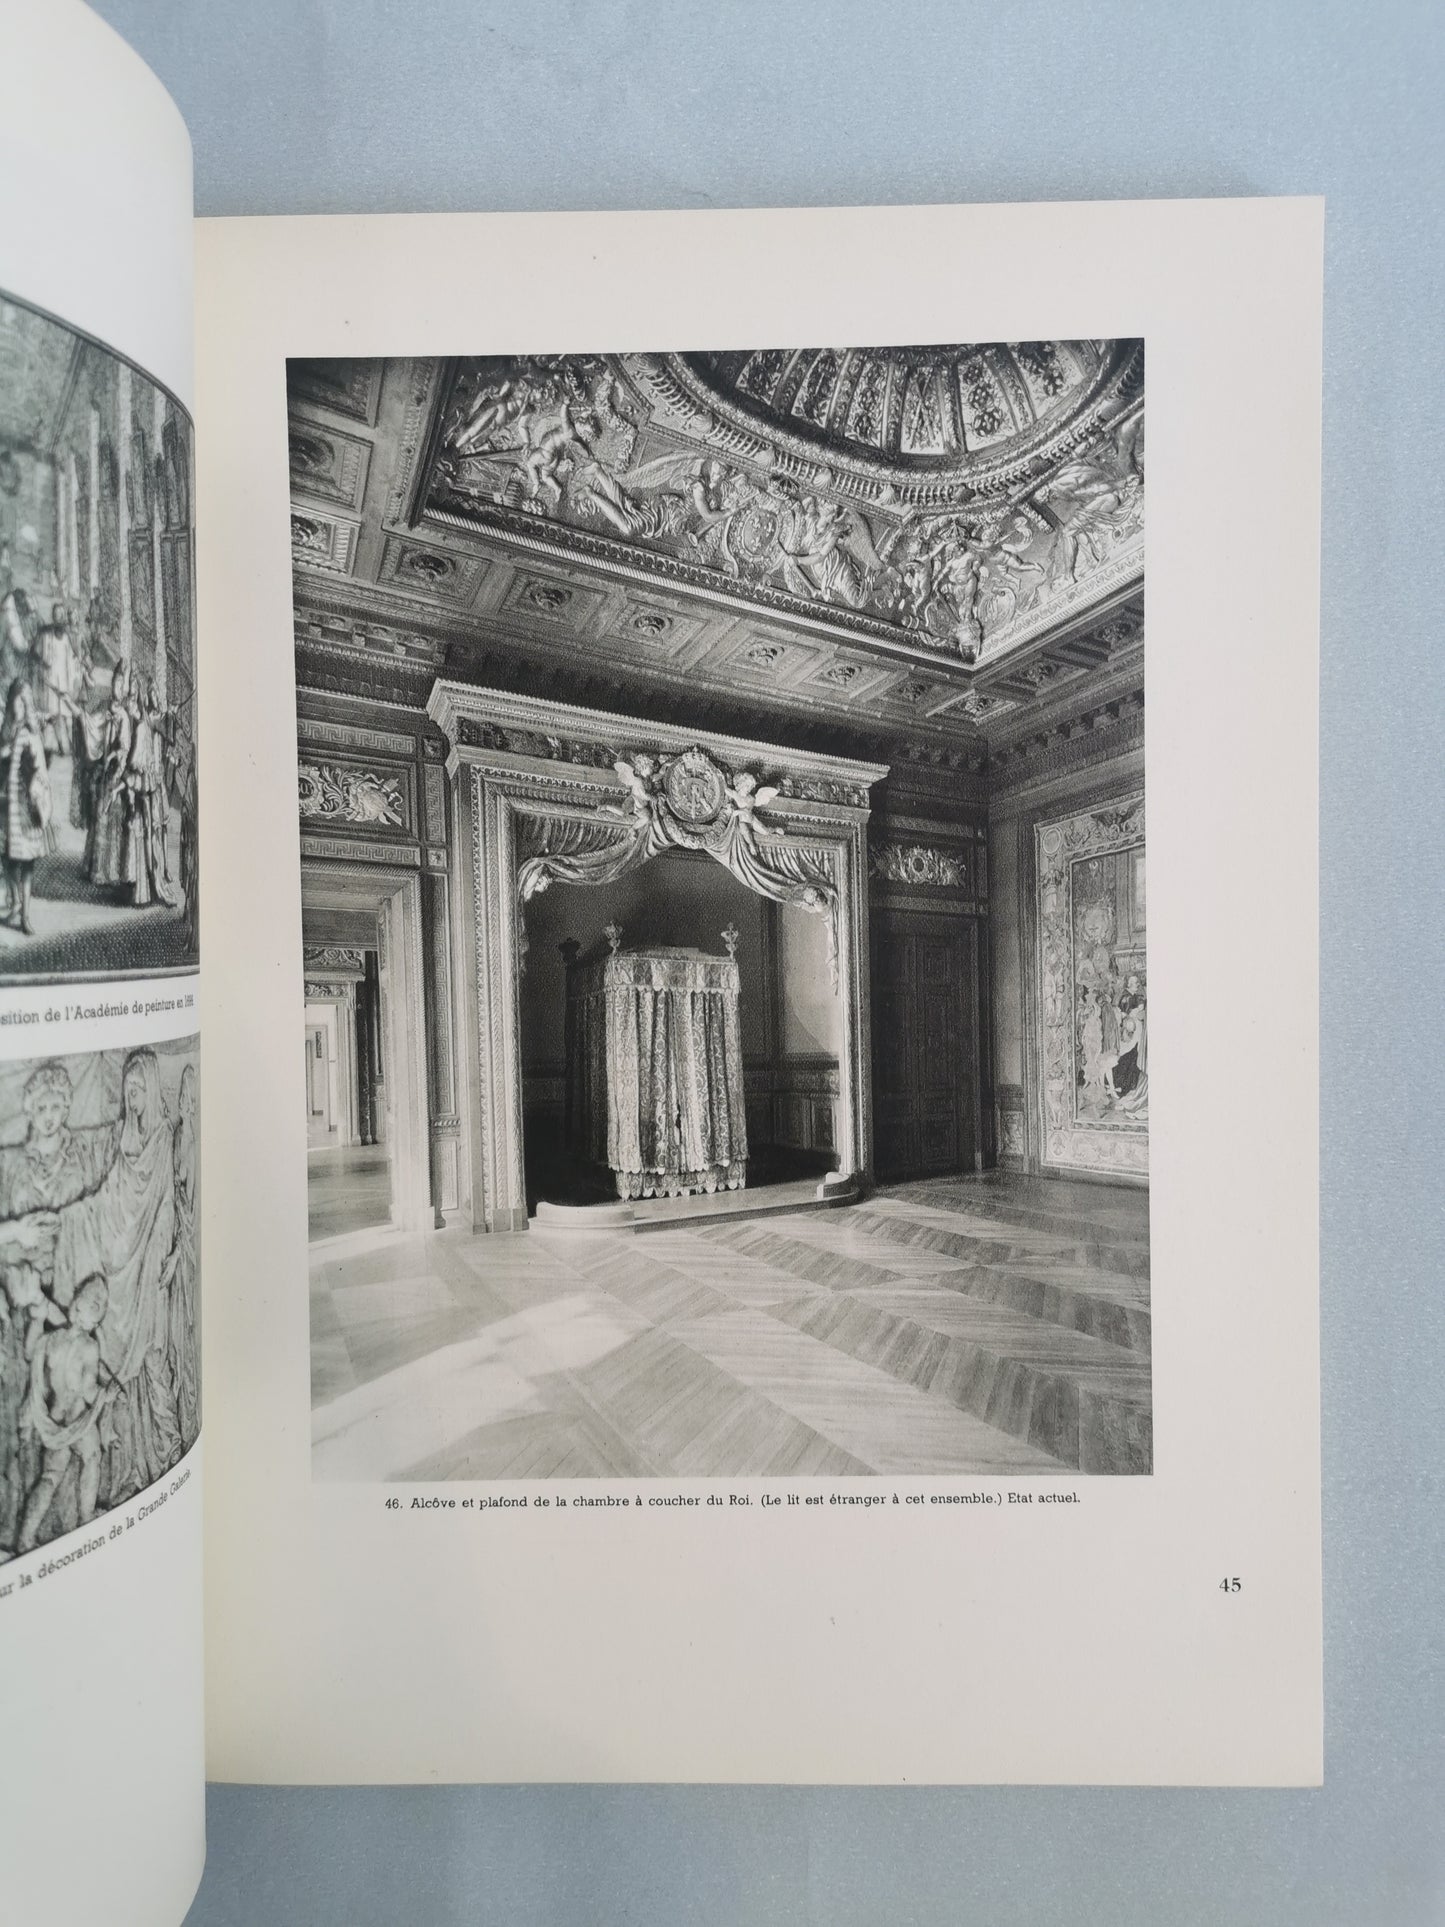 Le Louvre et les Tuileries, Histoire architecturale d'un double palais, Yvan Christ, Photographies de Sougez, Editions Tel, 1949.